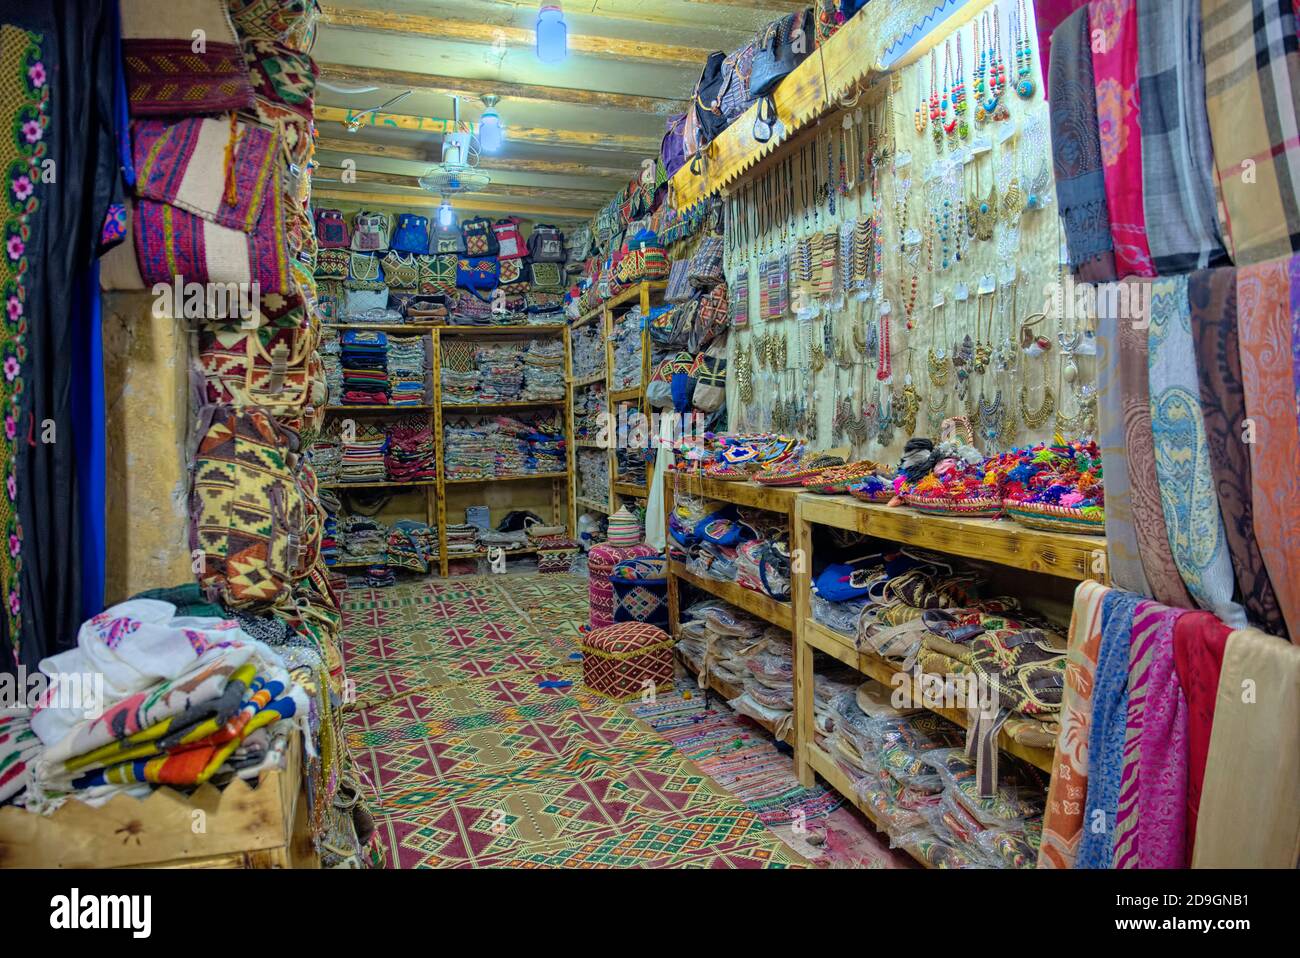 Un des magasins Siwa a pris @Siwa, Egypte Banque D'Images